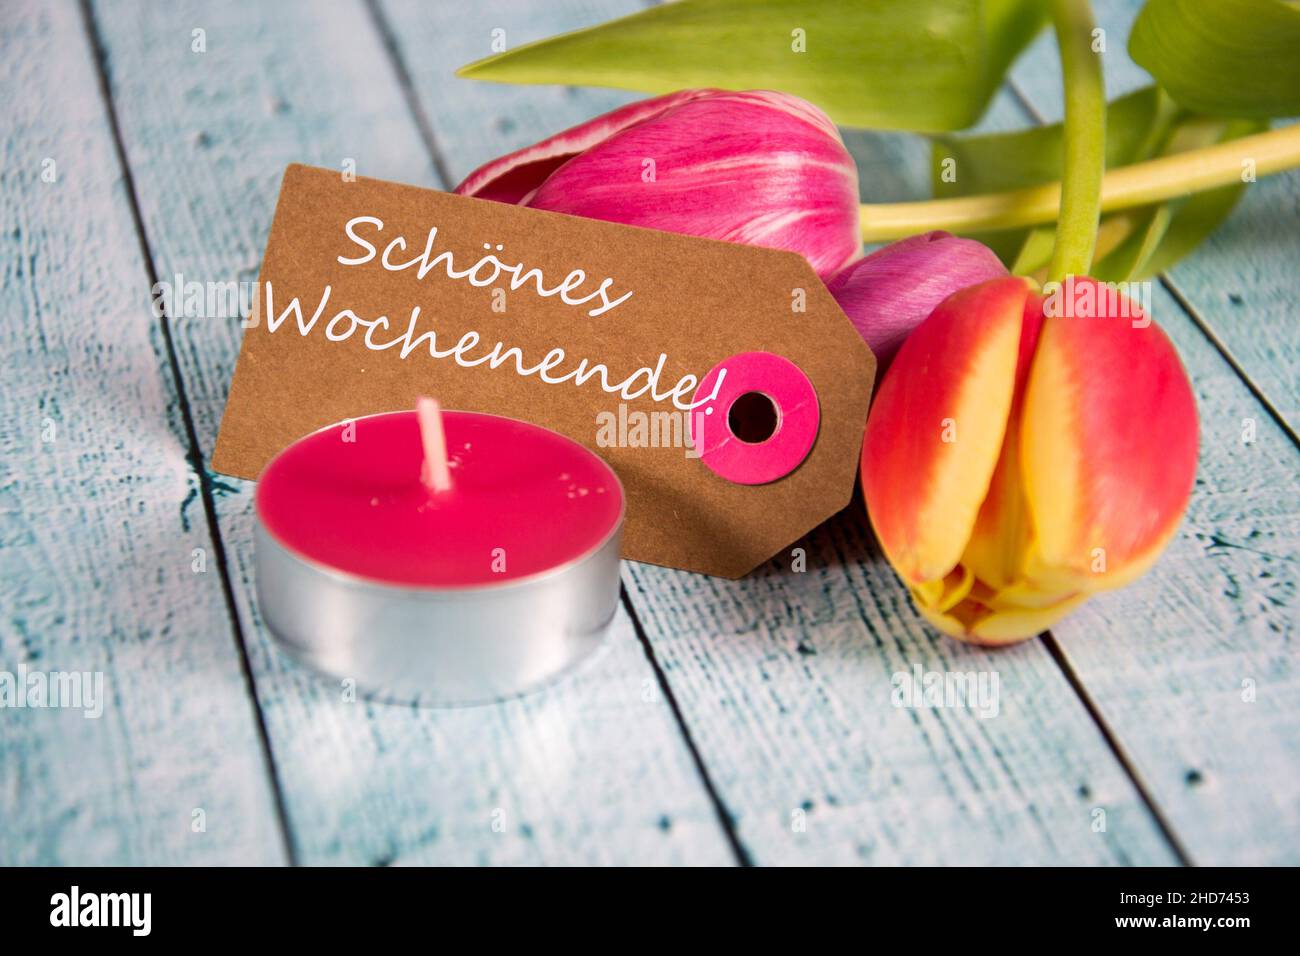 Schönes Wochenende! inscription written on paper tag. Stock Photo